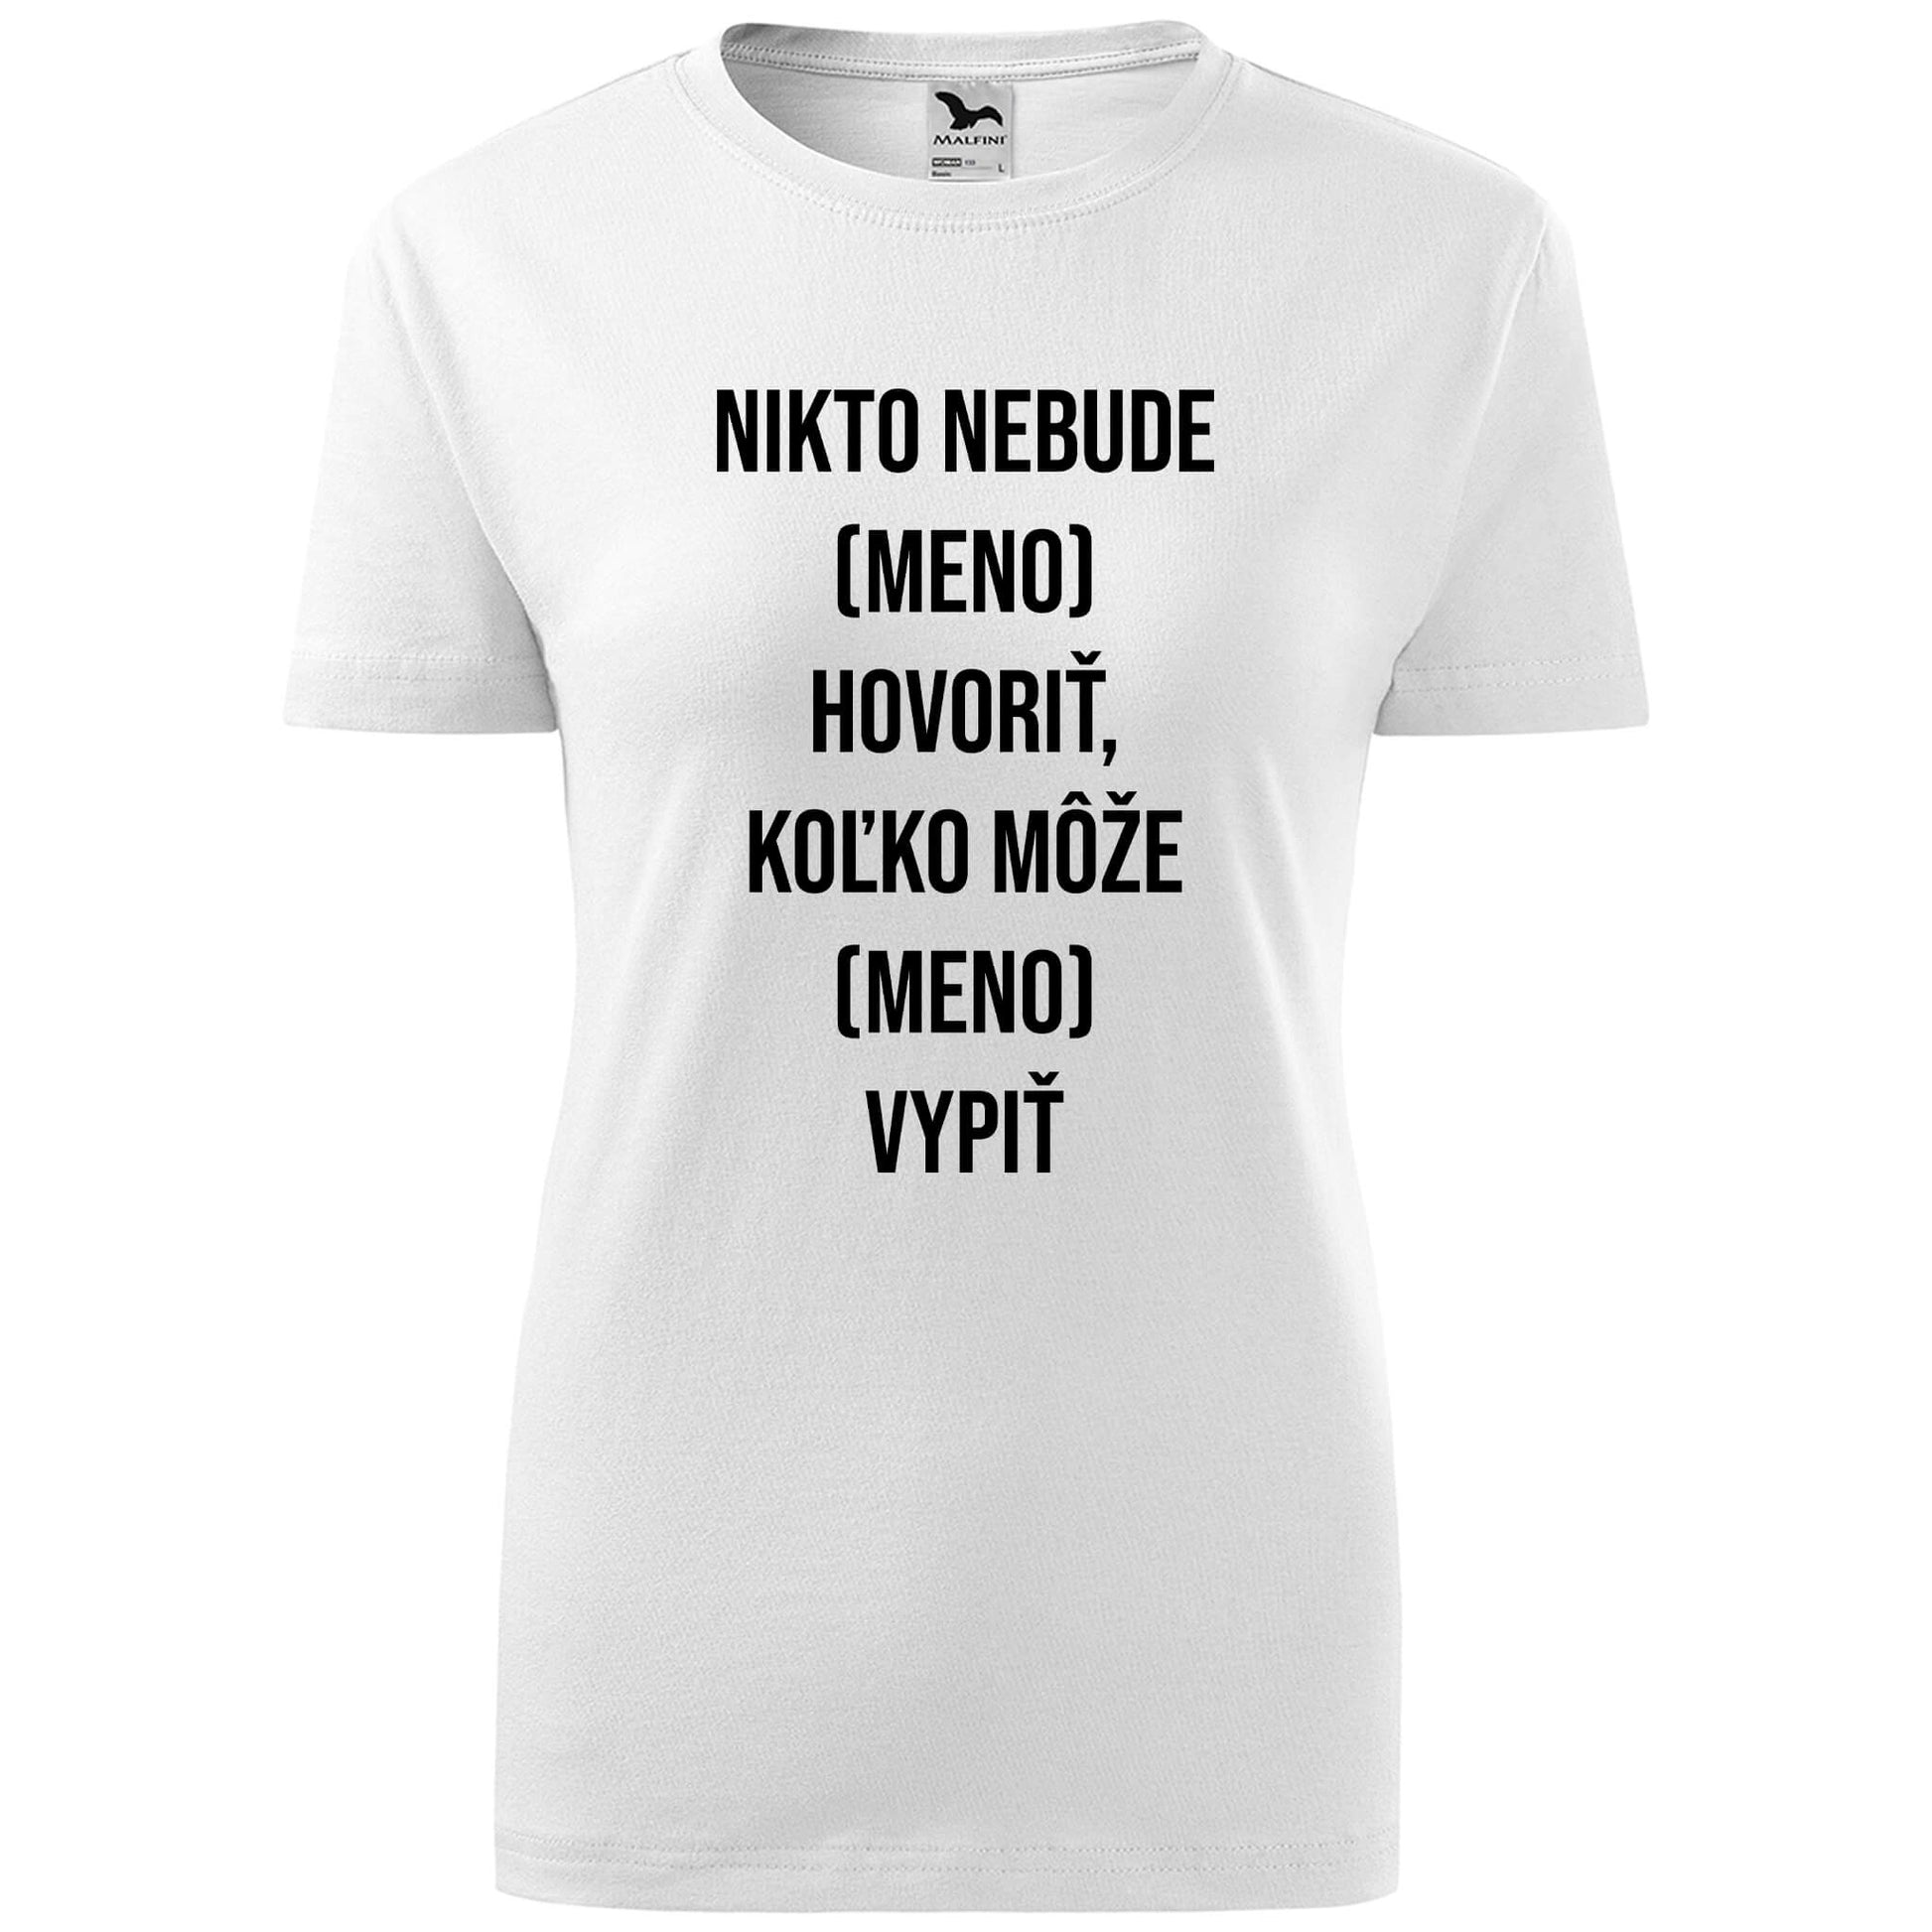 T-shirt - Nikto nebude hovoriť MENO koľko môže vypiť - Customizable - rvdesignprint